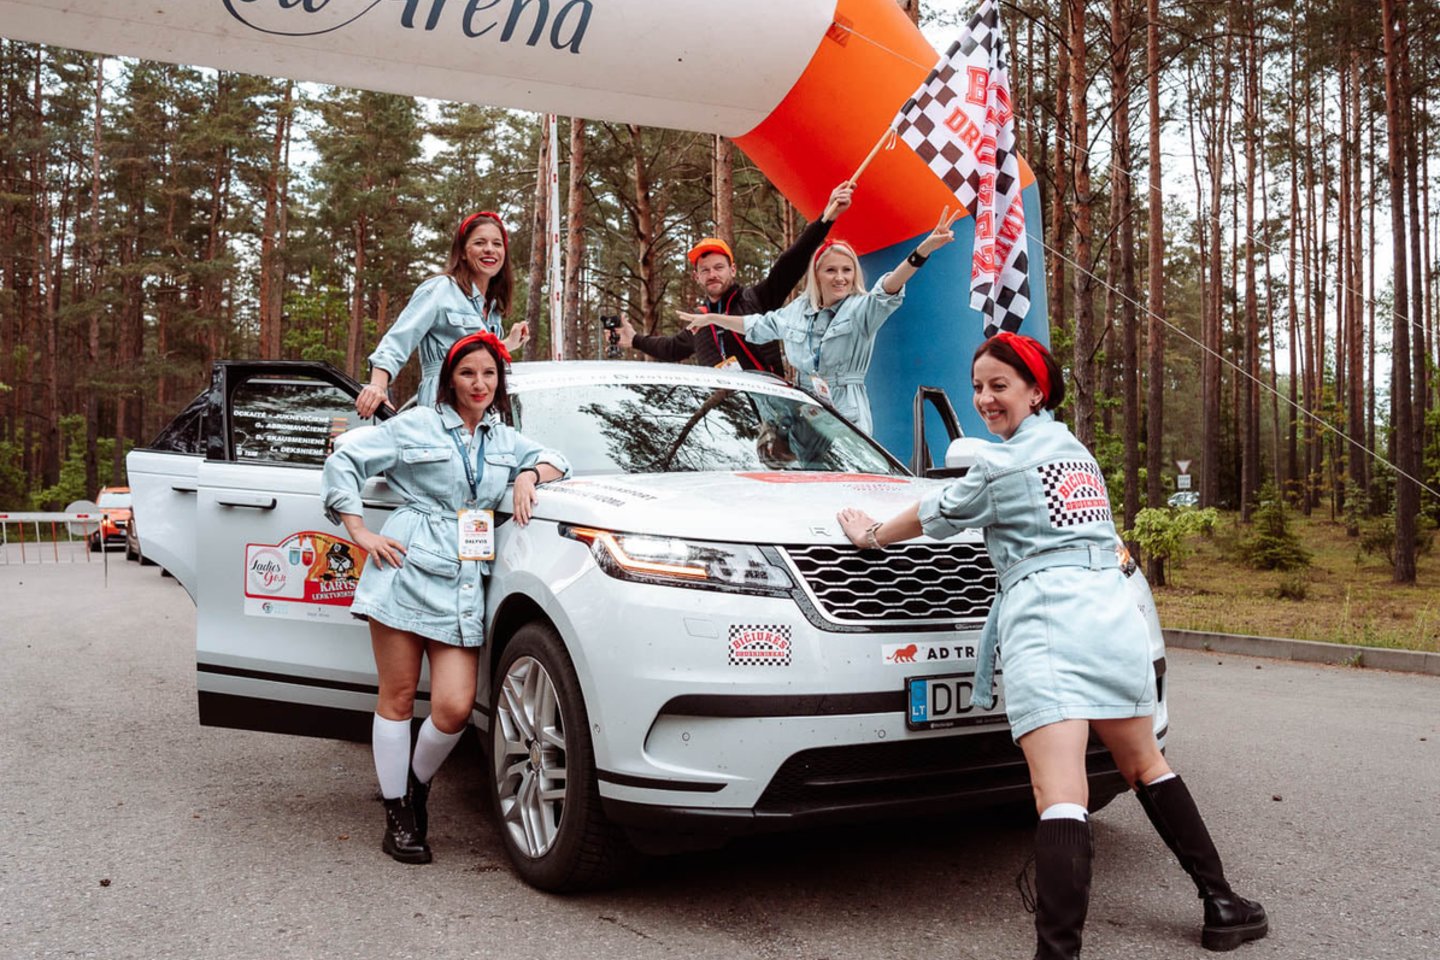 Orientacinis-pramoginis ralis „Ladies Go“ skelbia sezono atidarymą ir gegužės 28 d. automobilių sporto mėgėjas kviečia į pirmąjį etapą.<br>Pranešėjų spaudai nuotr.